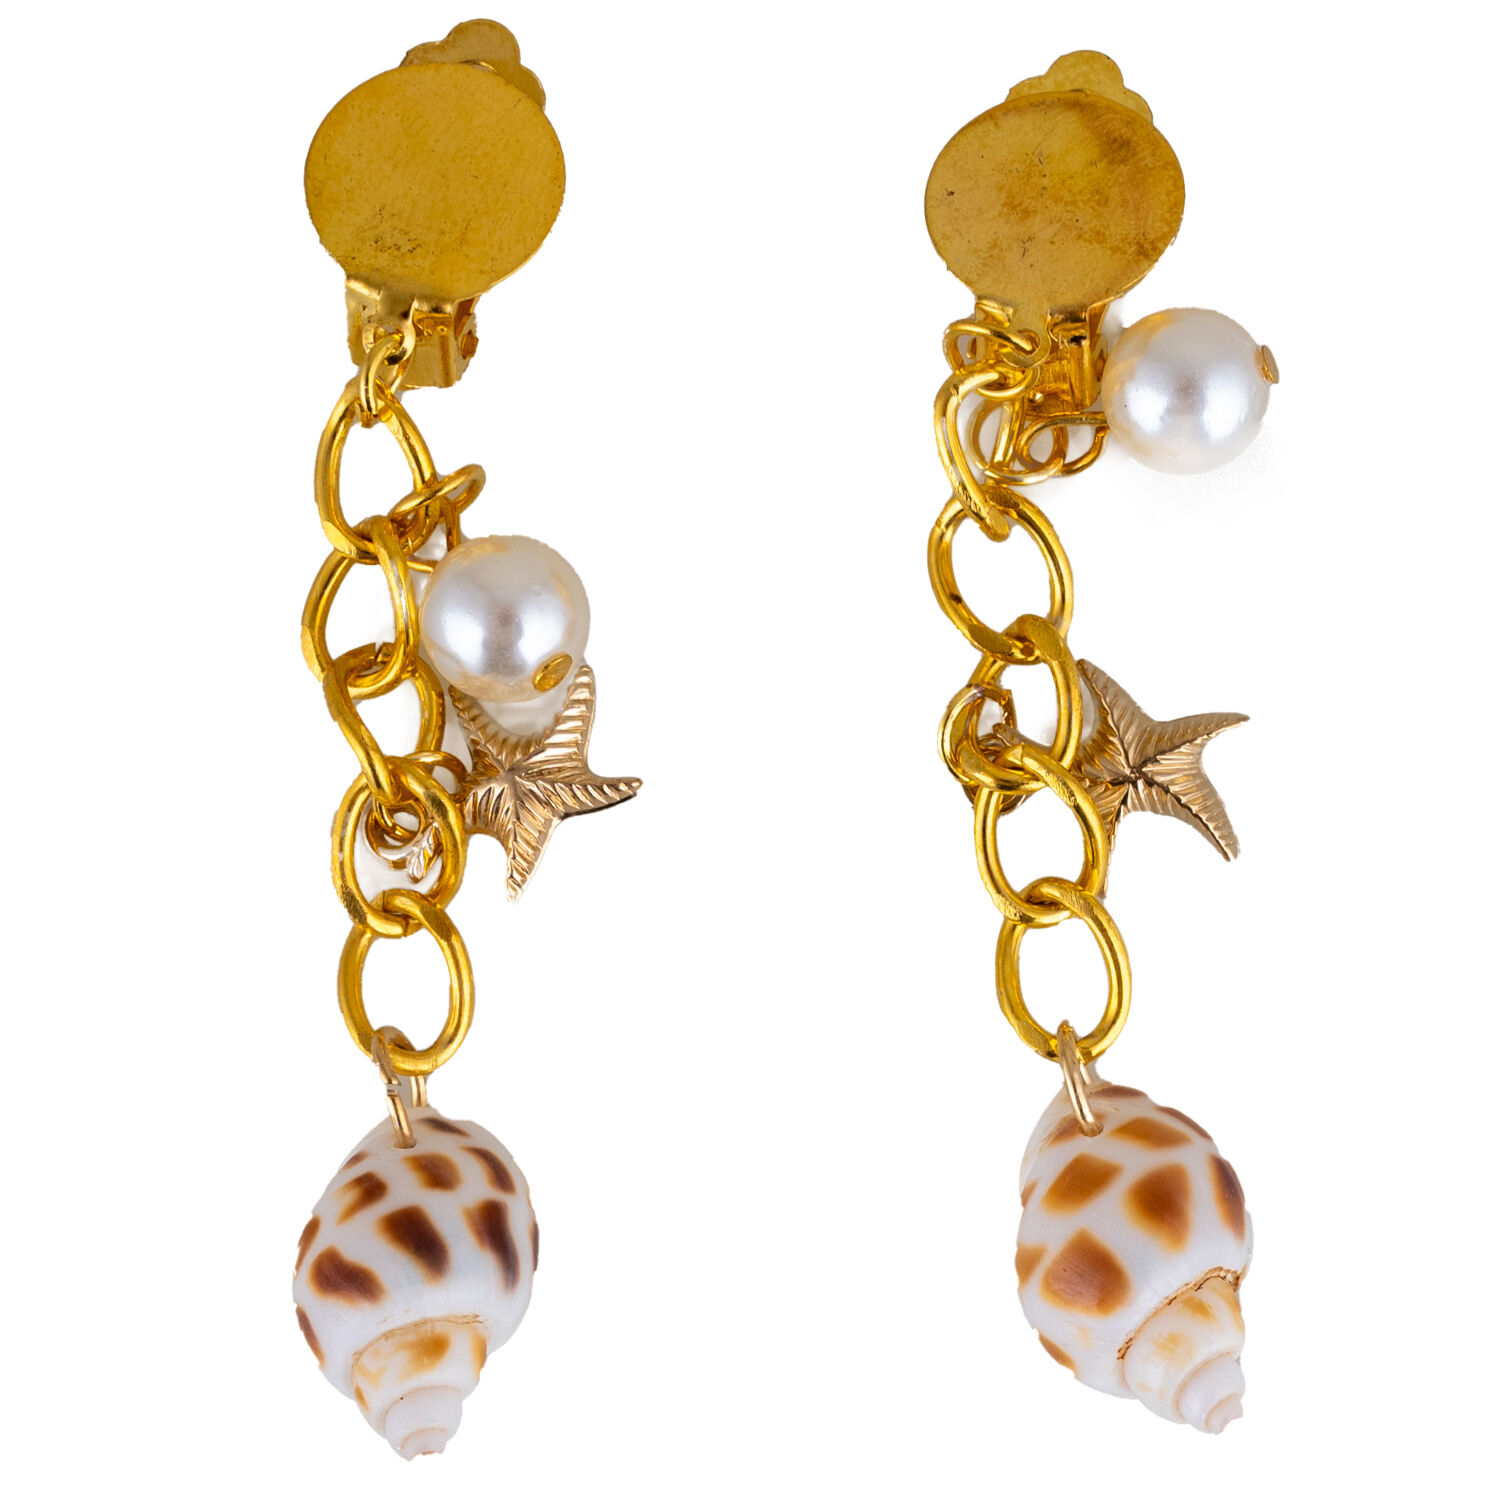 NEU Ohrringe Clips Meerjungfrau mit Muscheln und Perlen, gold